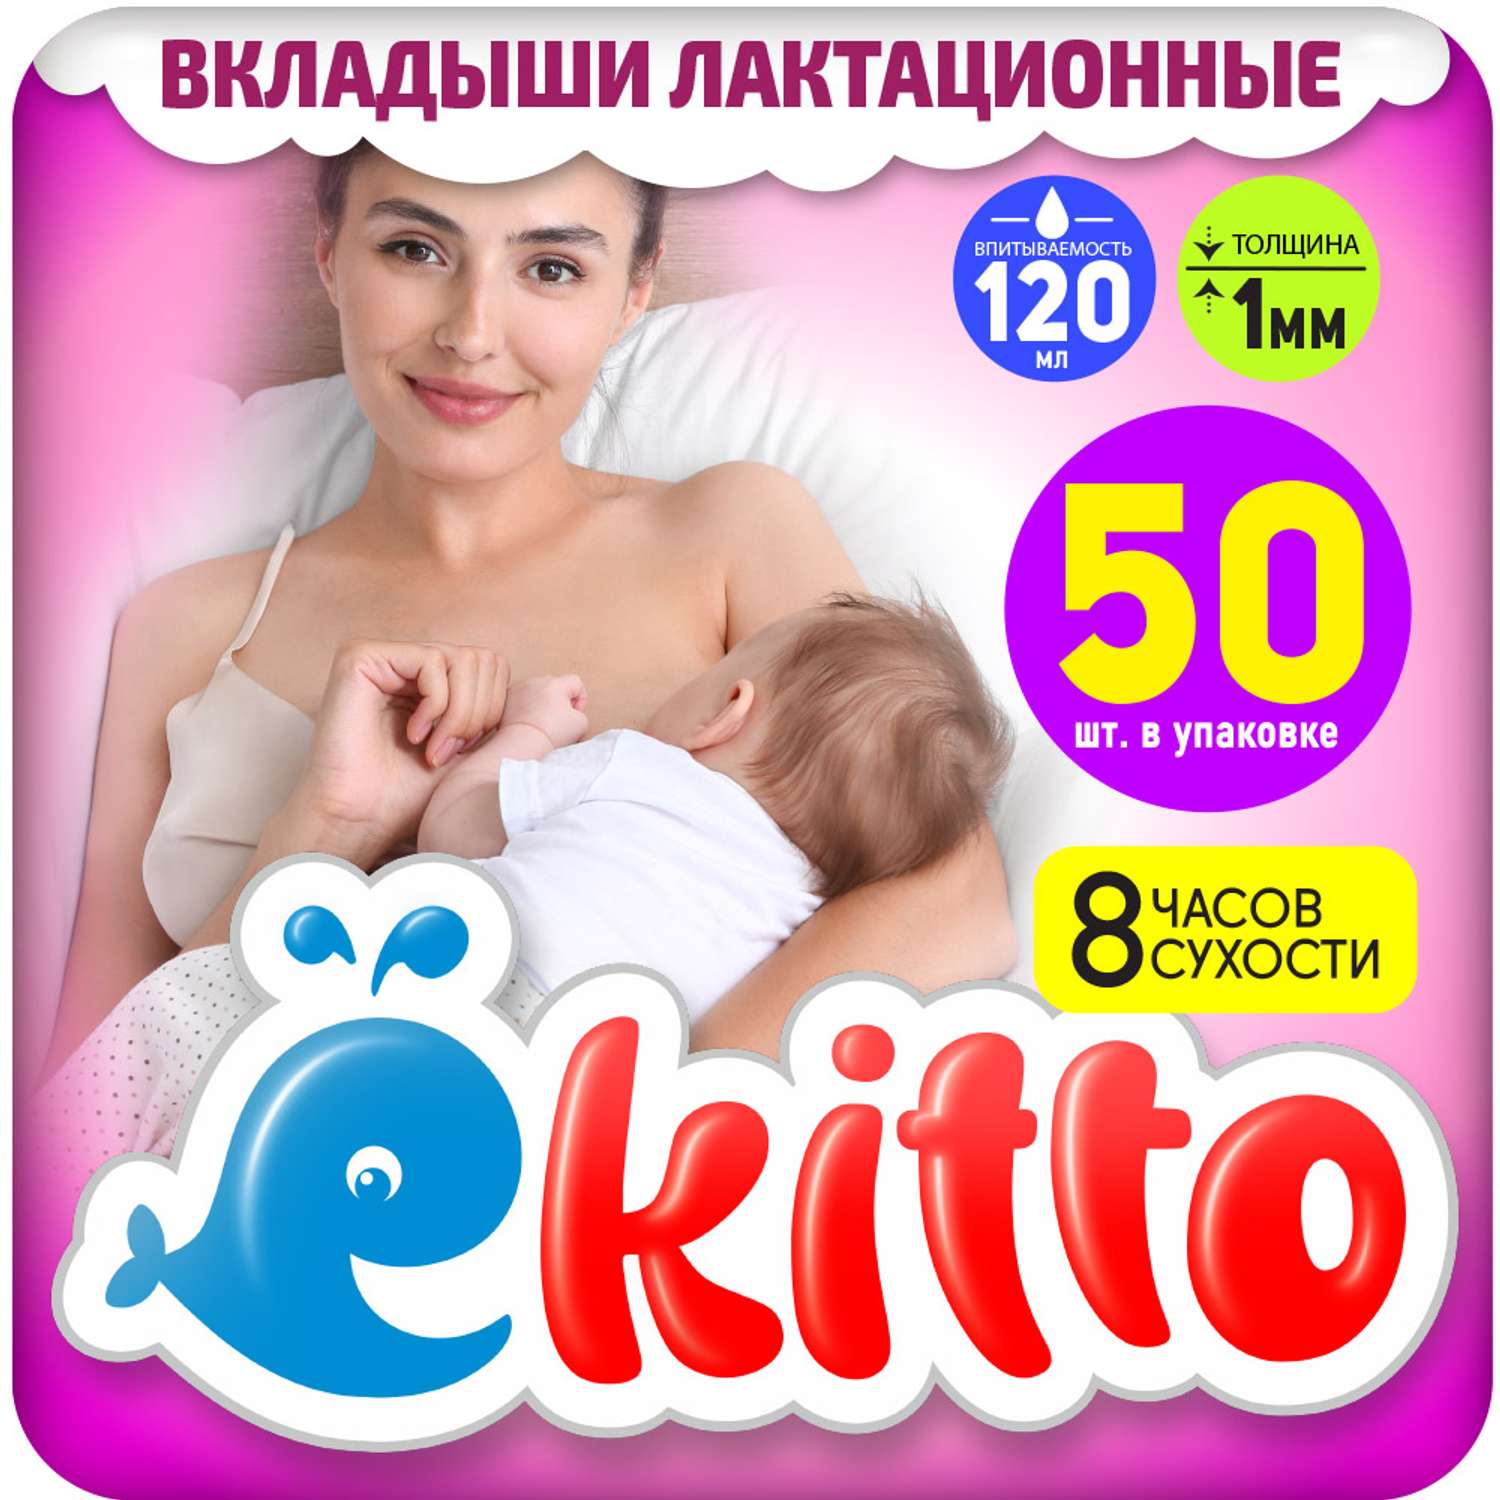 Вкладыши для груди Ekitto Лактационные 50 шт Е50 - фото 1